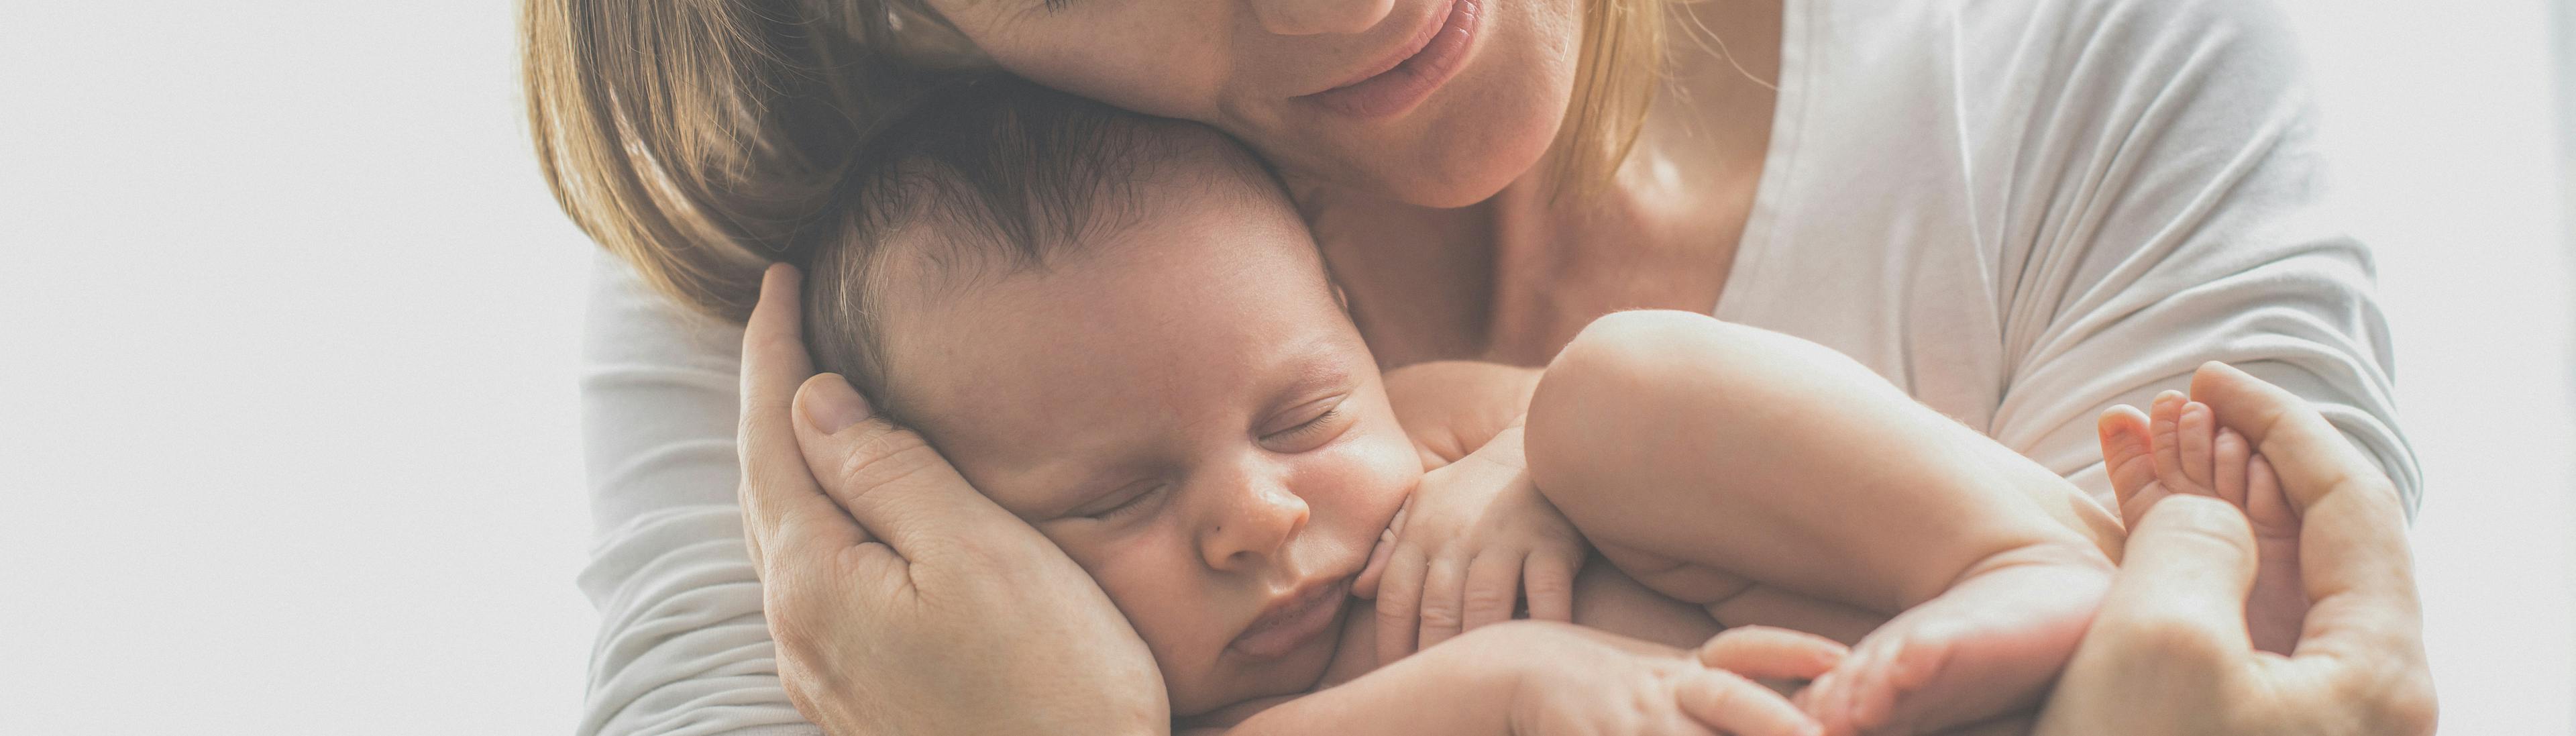 Los cambios fisiológicos más importantes del puerperio madre bebe recien nacido